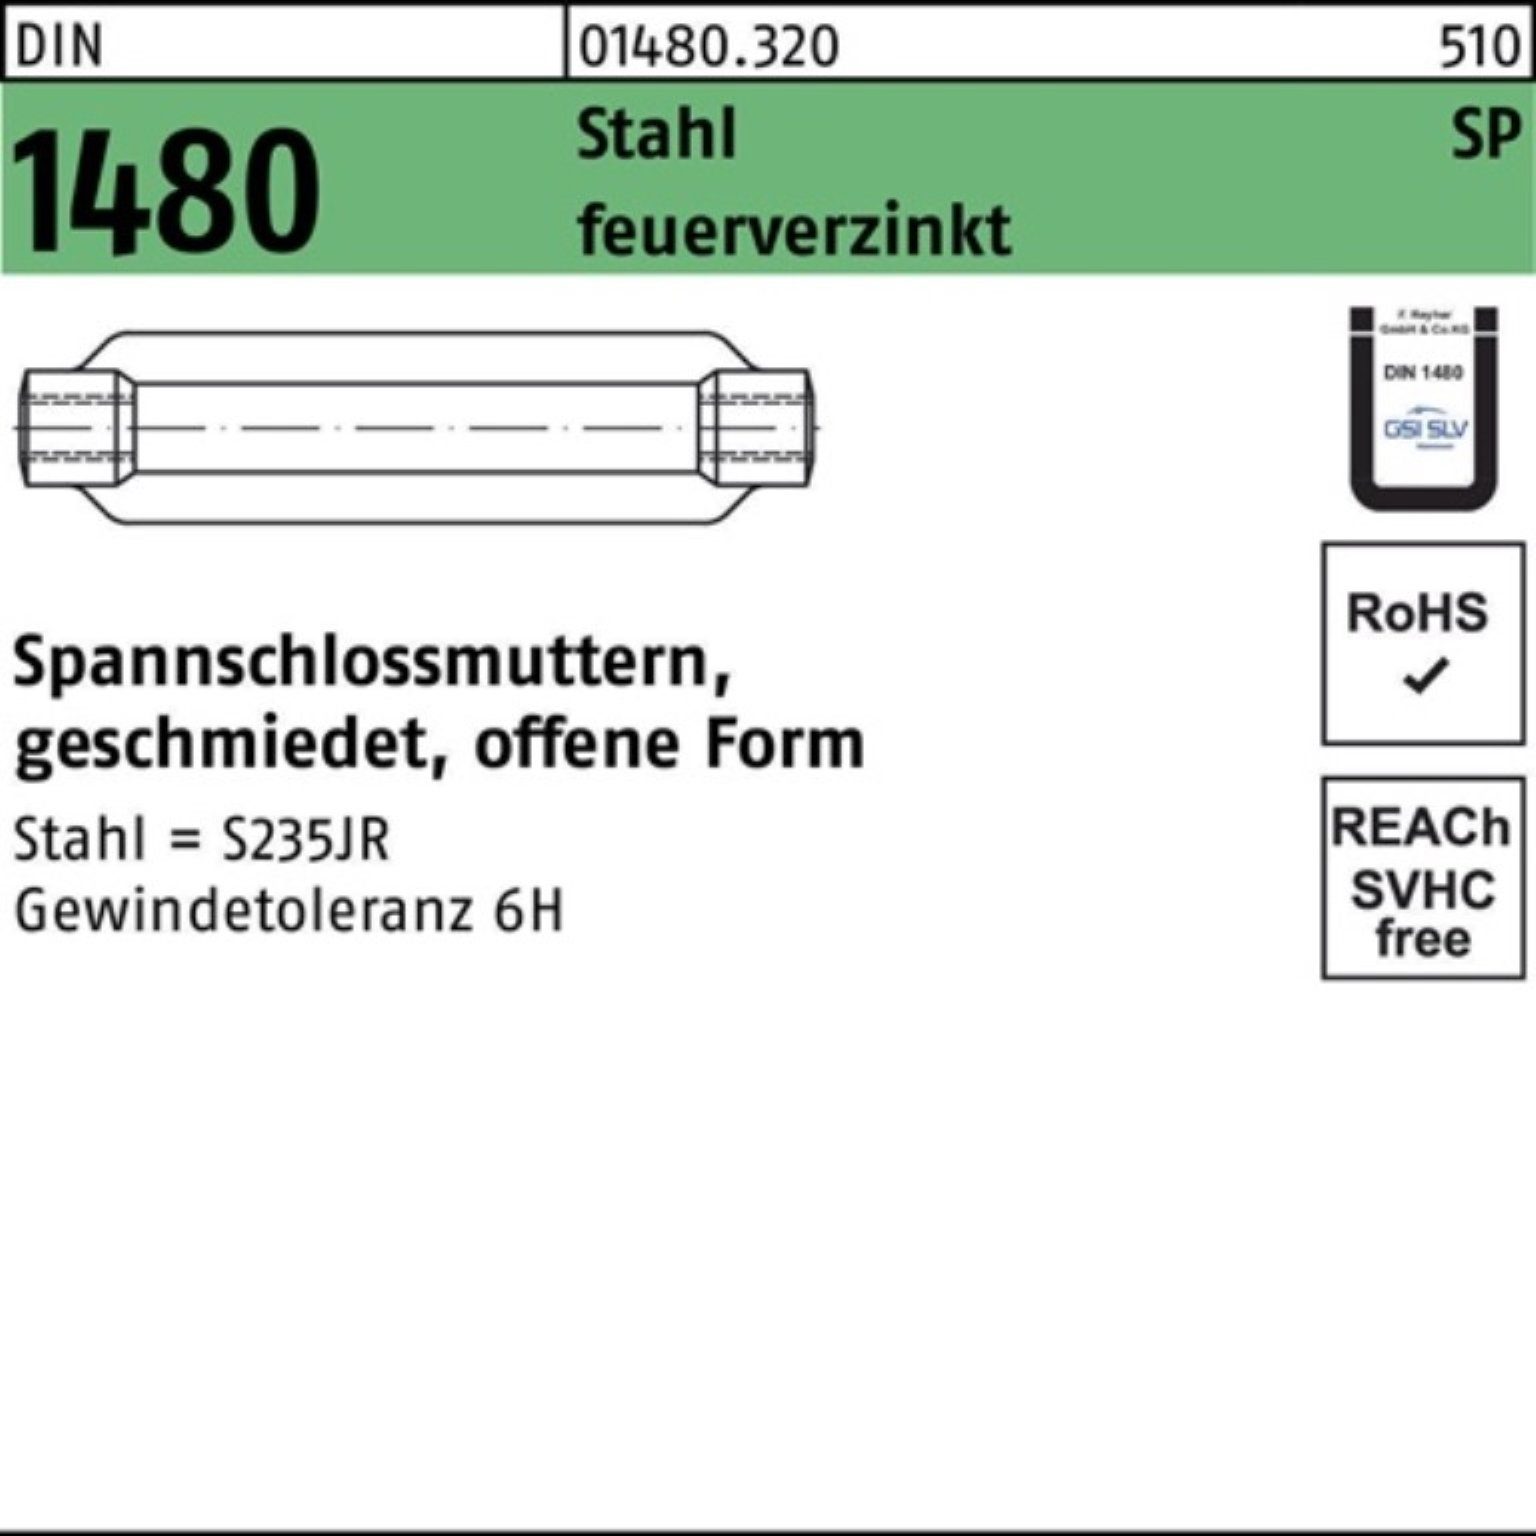 ÜZ Stahl Spannschlossmutter 1480 DIN Pack M12/125 Spannschloss SP Reyher offen 100er feue